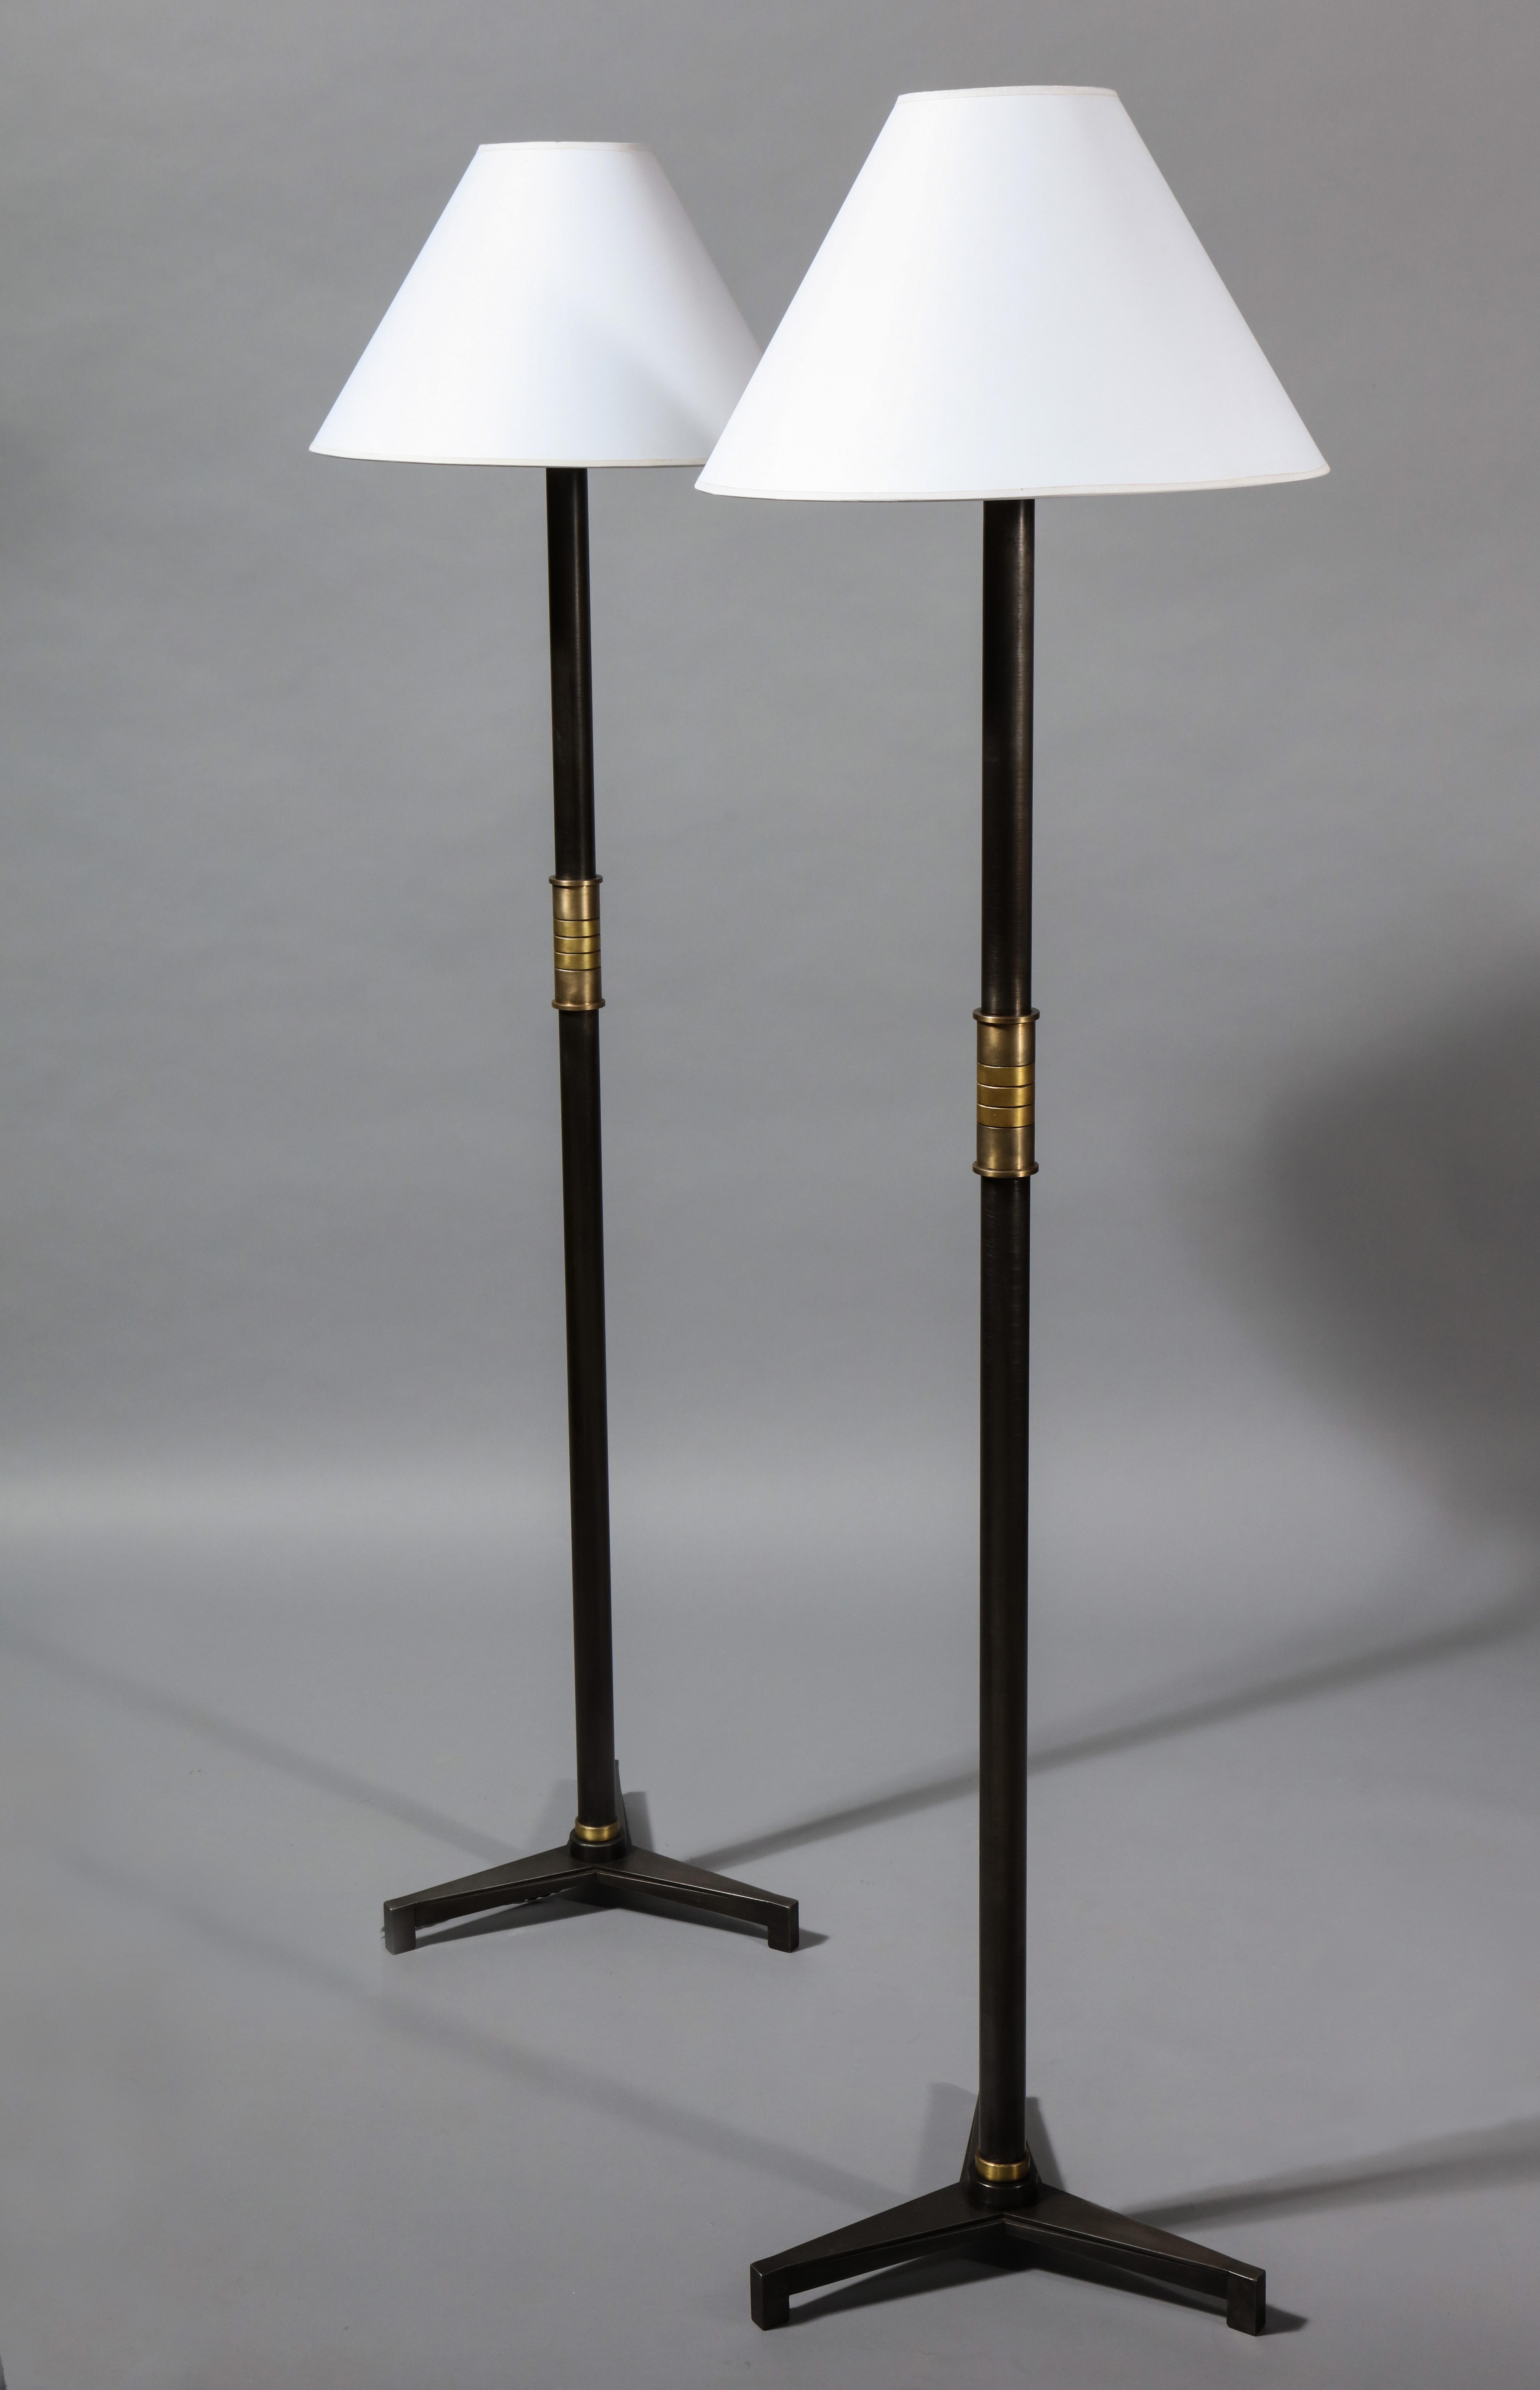 Un lampadaire avec une base à trois pieds présentant des cannelures effilées qui s'inscrivent dans le mouvement art déco. La poignée est réalisée dans une série de bandes de laiton et de bronze subtilement contrastés. Ce design s'inspire également